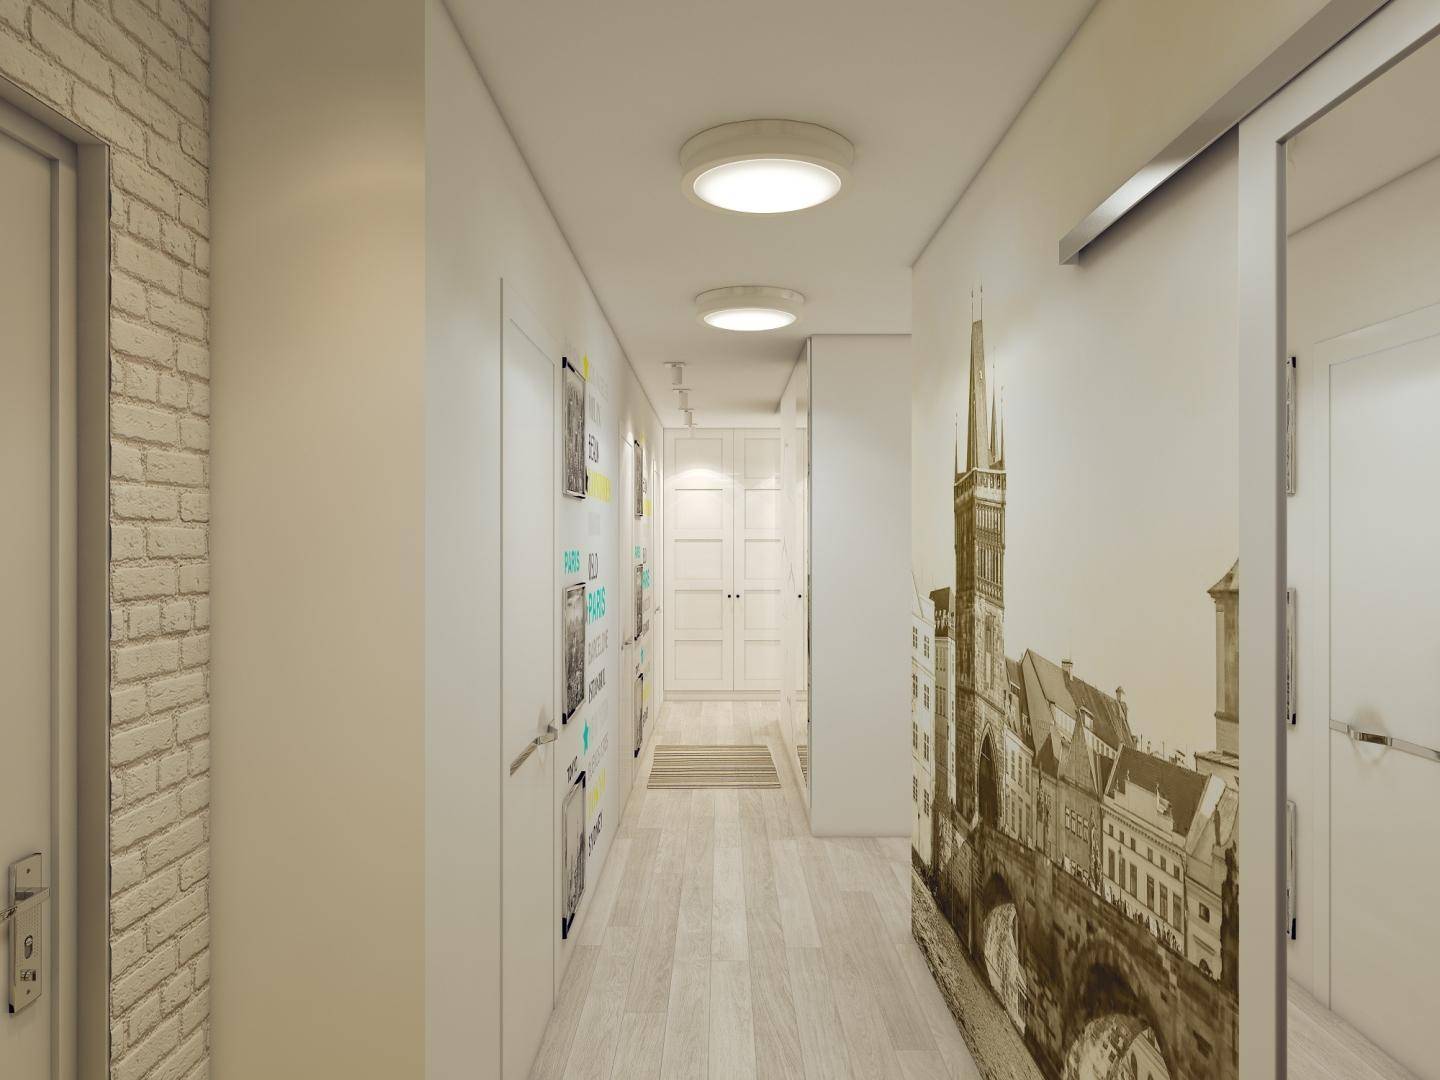 Выбираем обои, расширяющие пространство, в узкий коридор. дизайн обоев для узкого коридора в квартире